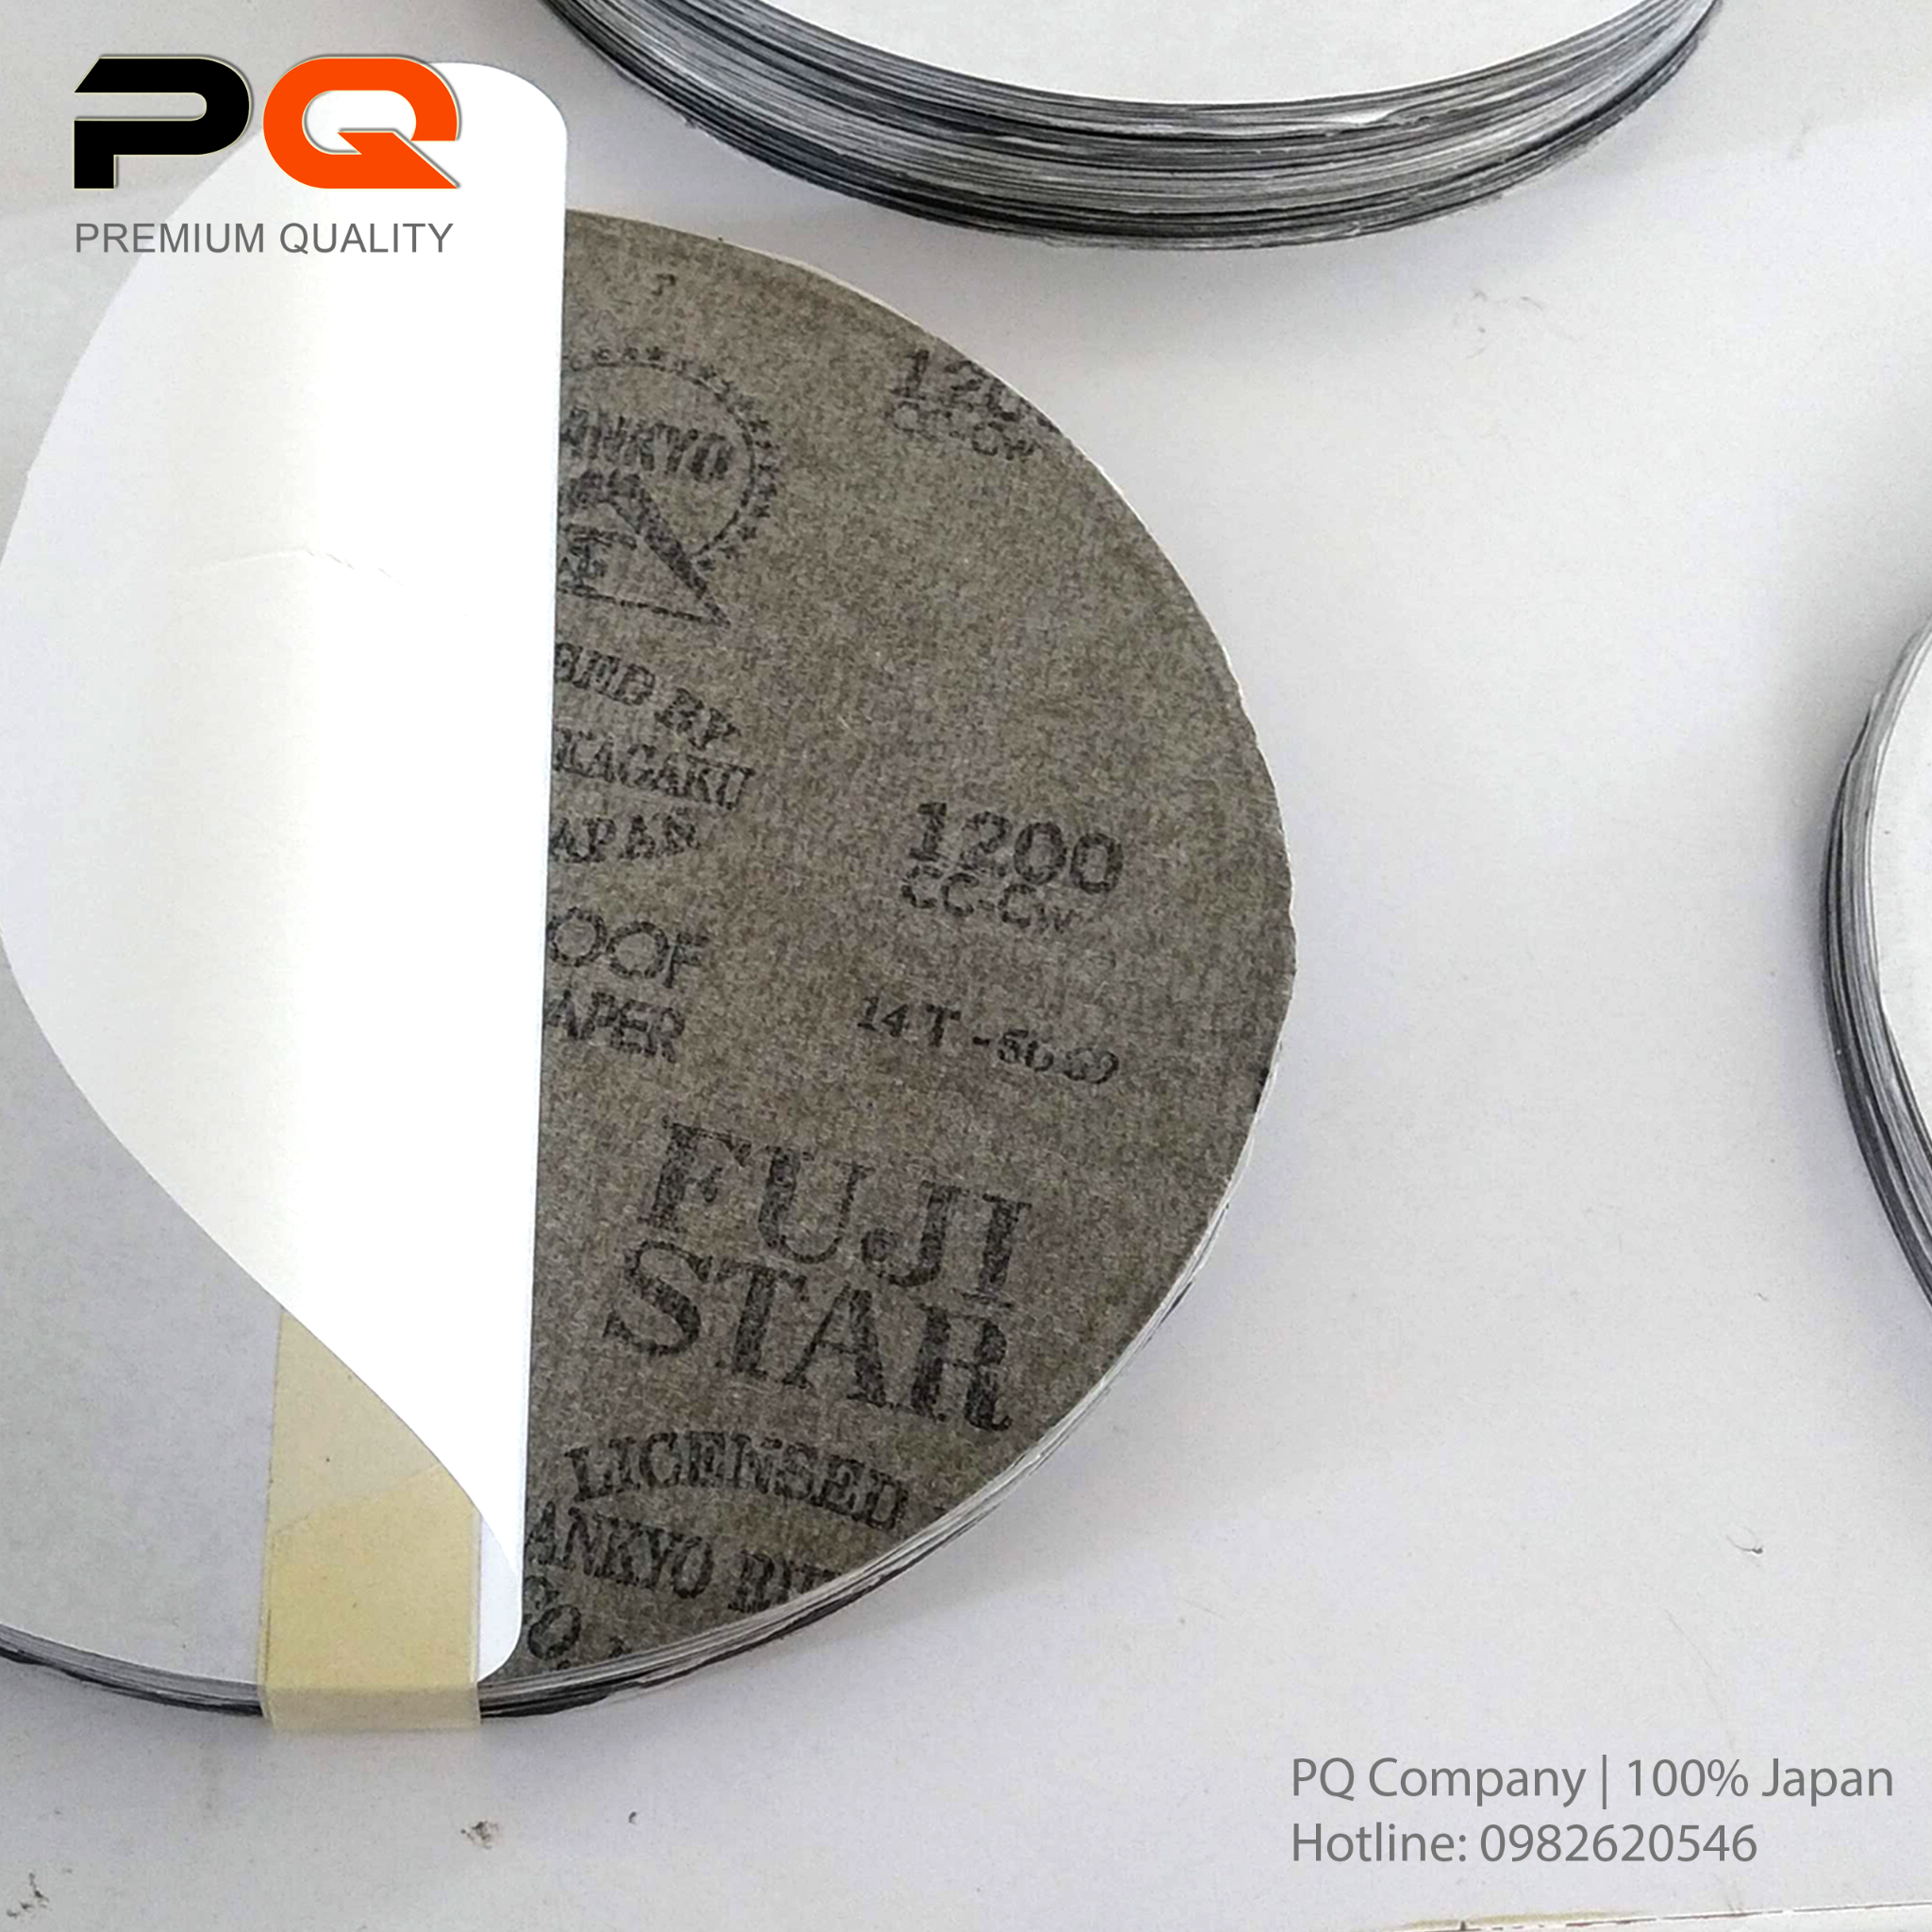 P1200, Nhám dĩa mặt dán decal 8 inch, có keo dính,  Hộp 50 tờ; Qui cách D200mm x Không lỗ; Độ hạt P1200. Made in Japan. Code: 3.10.530.0068 | www.thietbinhapkhau.com | Công ty PQ 